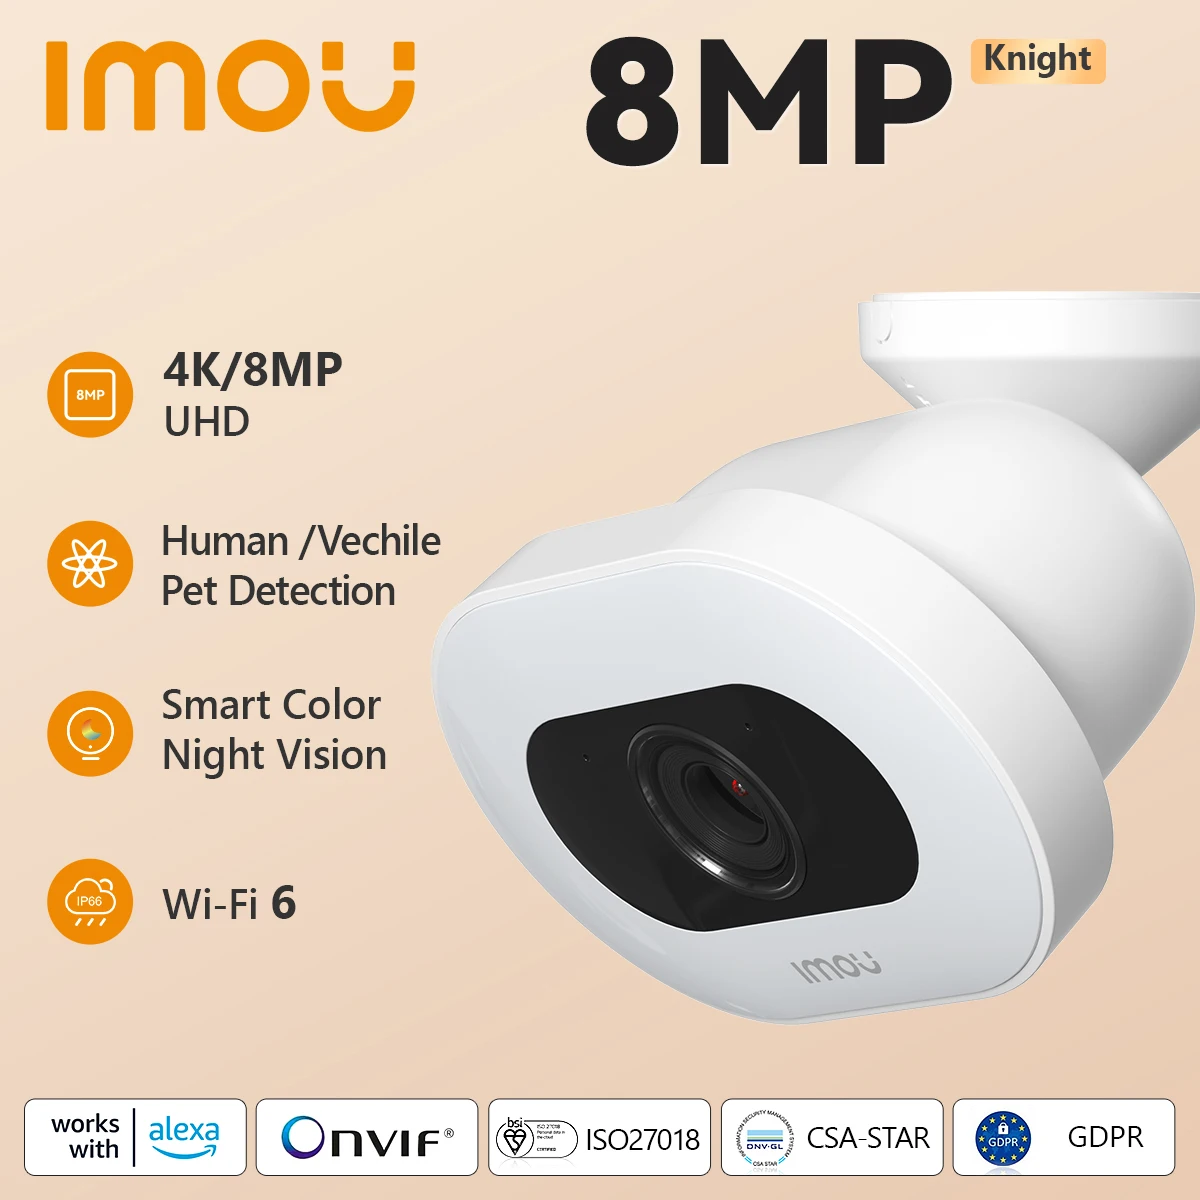 IMOU Knight-cámara de vigilancia CCTV 4K UHD de 8MP para exteriores, videocámara de seguridad con Wifi, detección de personas/vehículos/mascotas basada en Ia